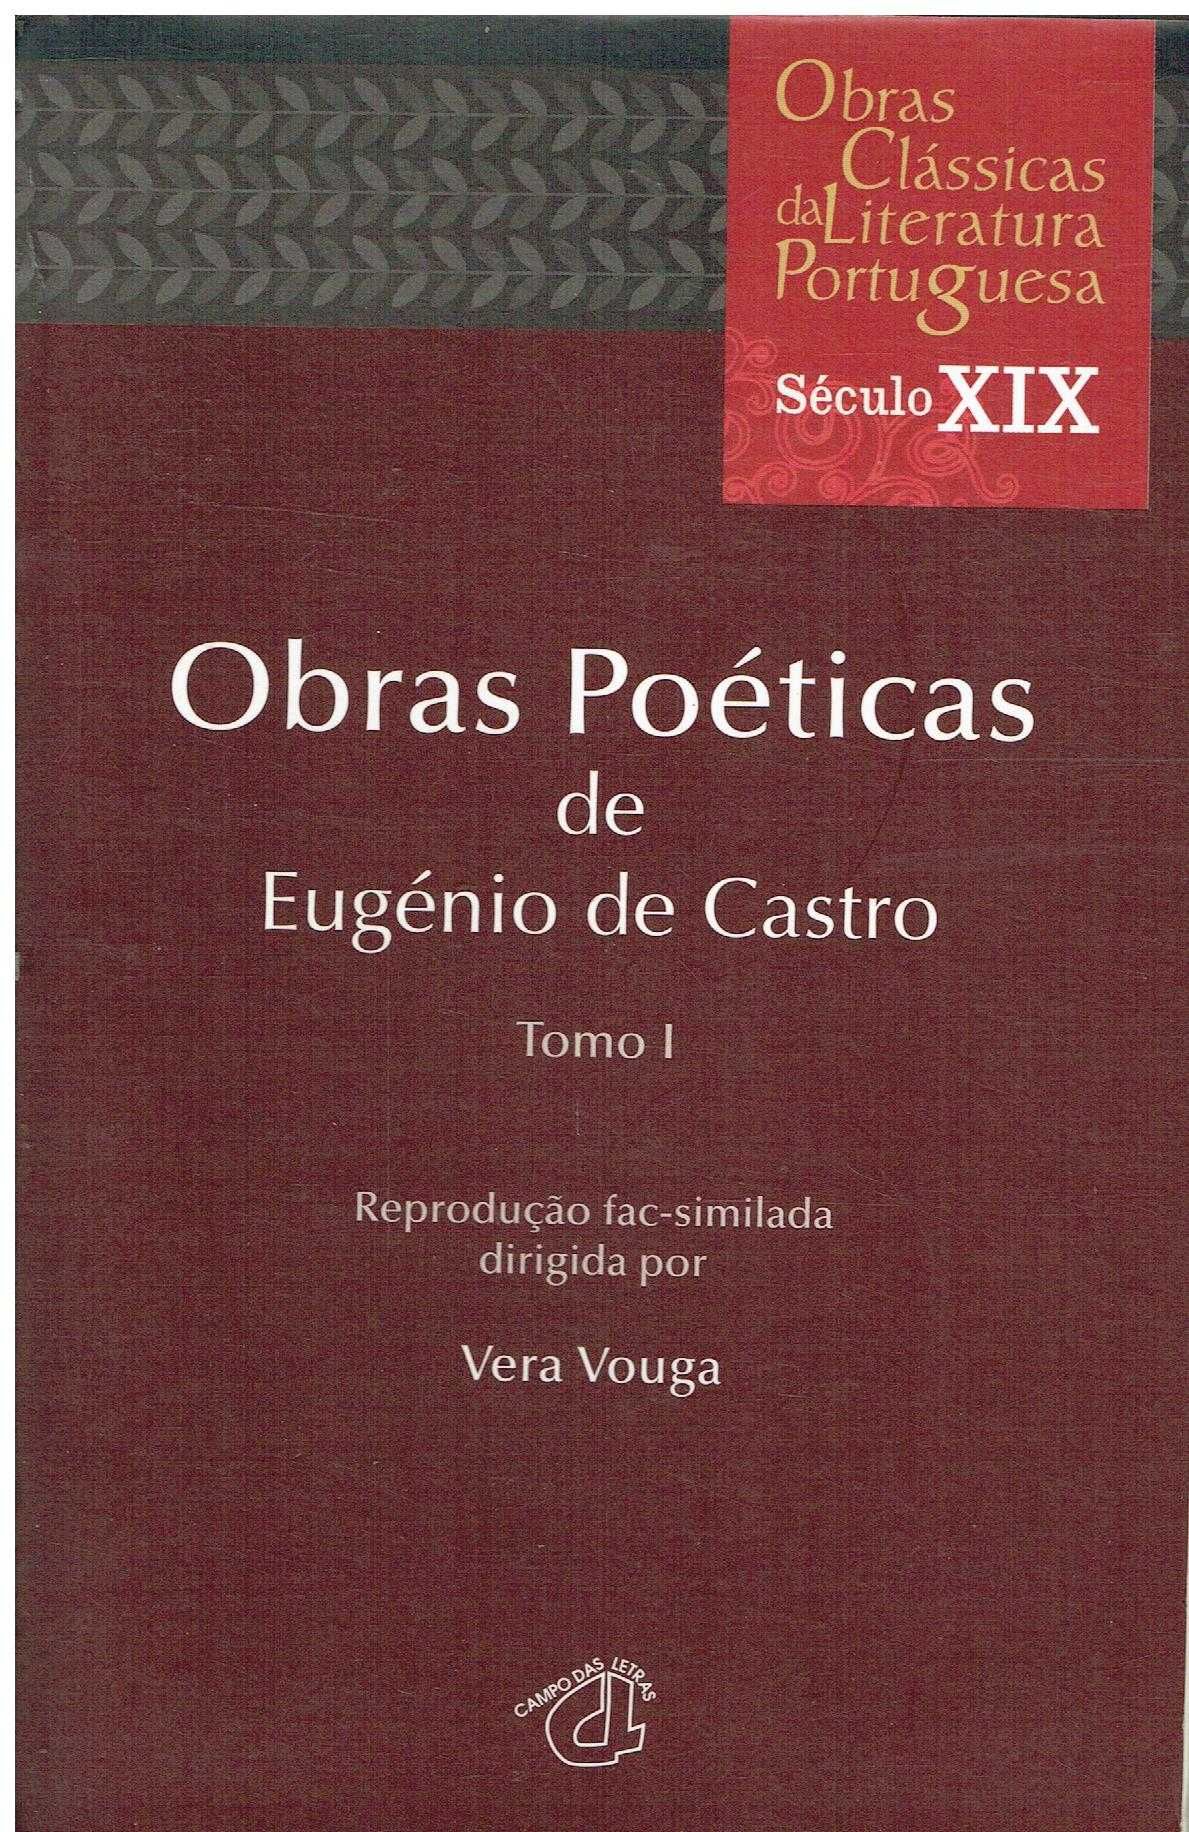 729

Obras Poéticas de Eugénio de Castro - Tomo I
de Eugénio de Castro